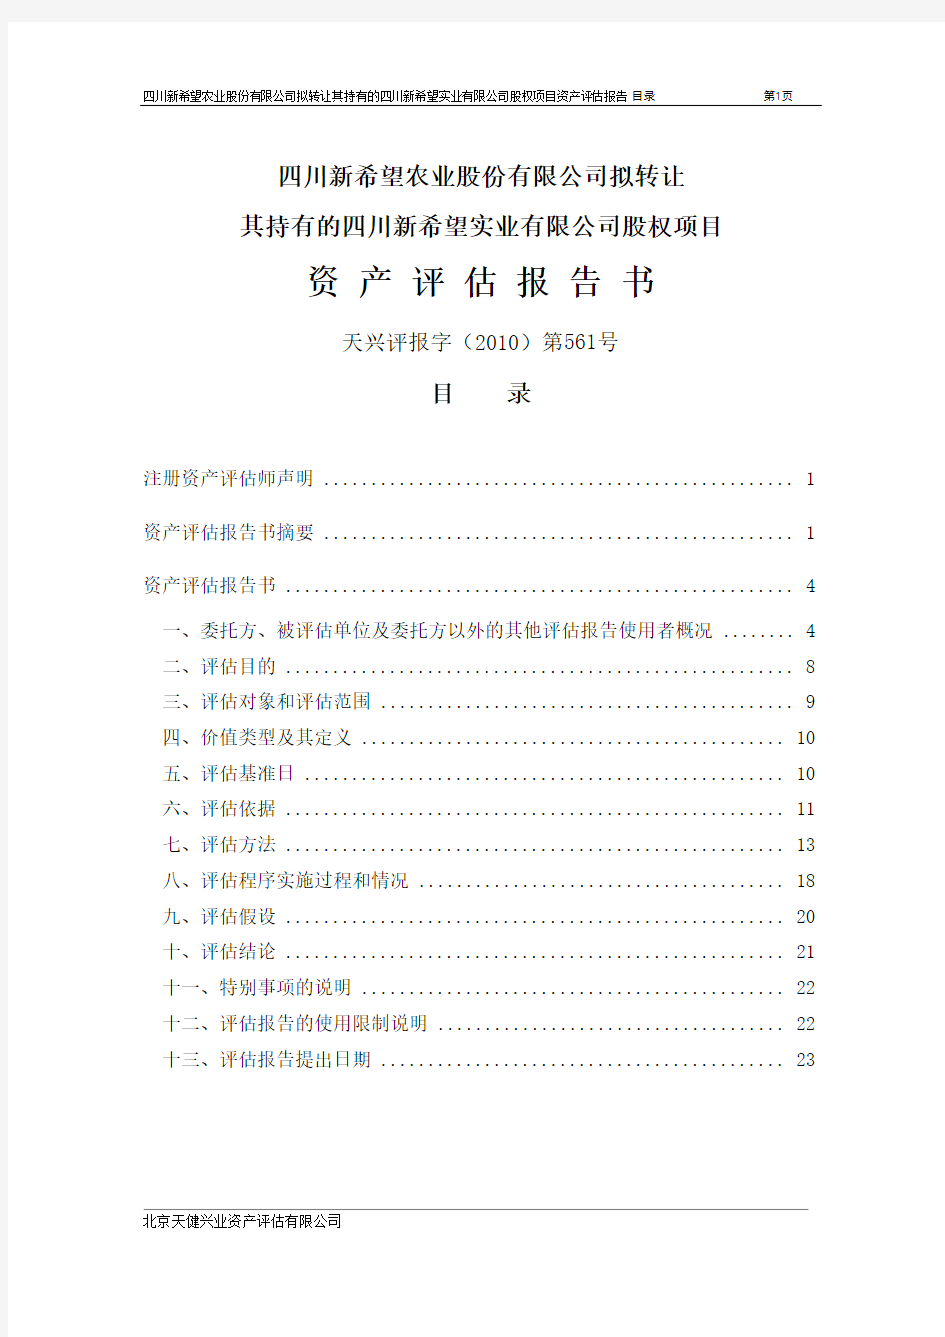 新 希 望：拟转让其持有的四川新希望实业有限公司股权项目资产评估报告书 2011-01-10